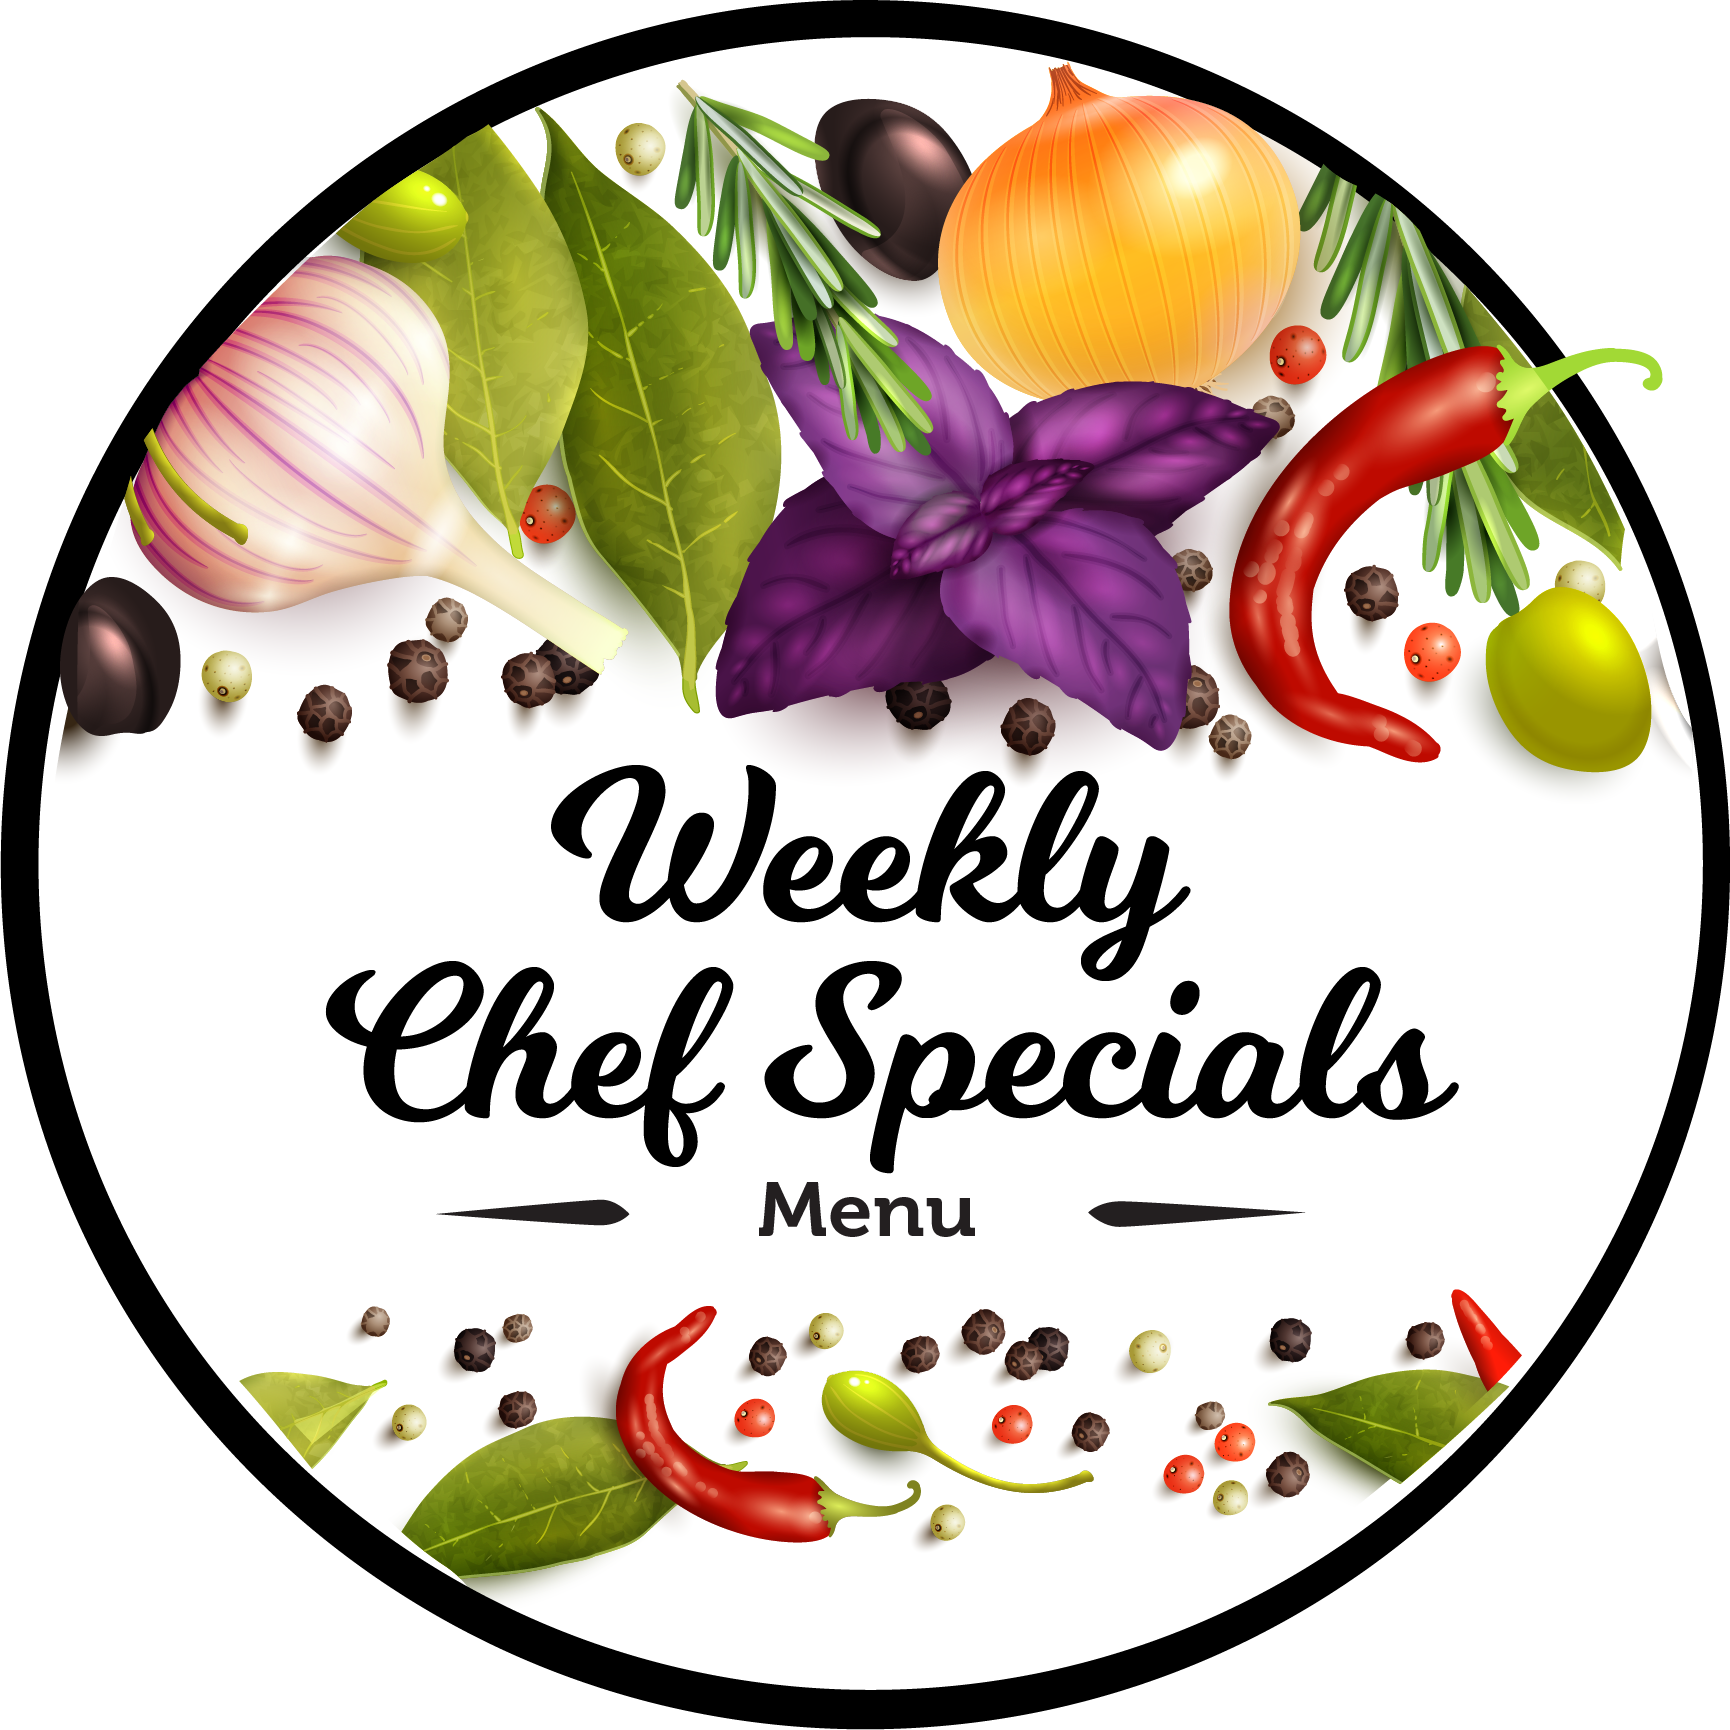 Weekly Chef Specials Menu